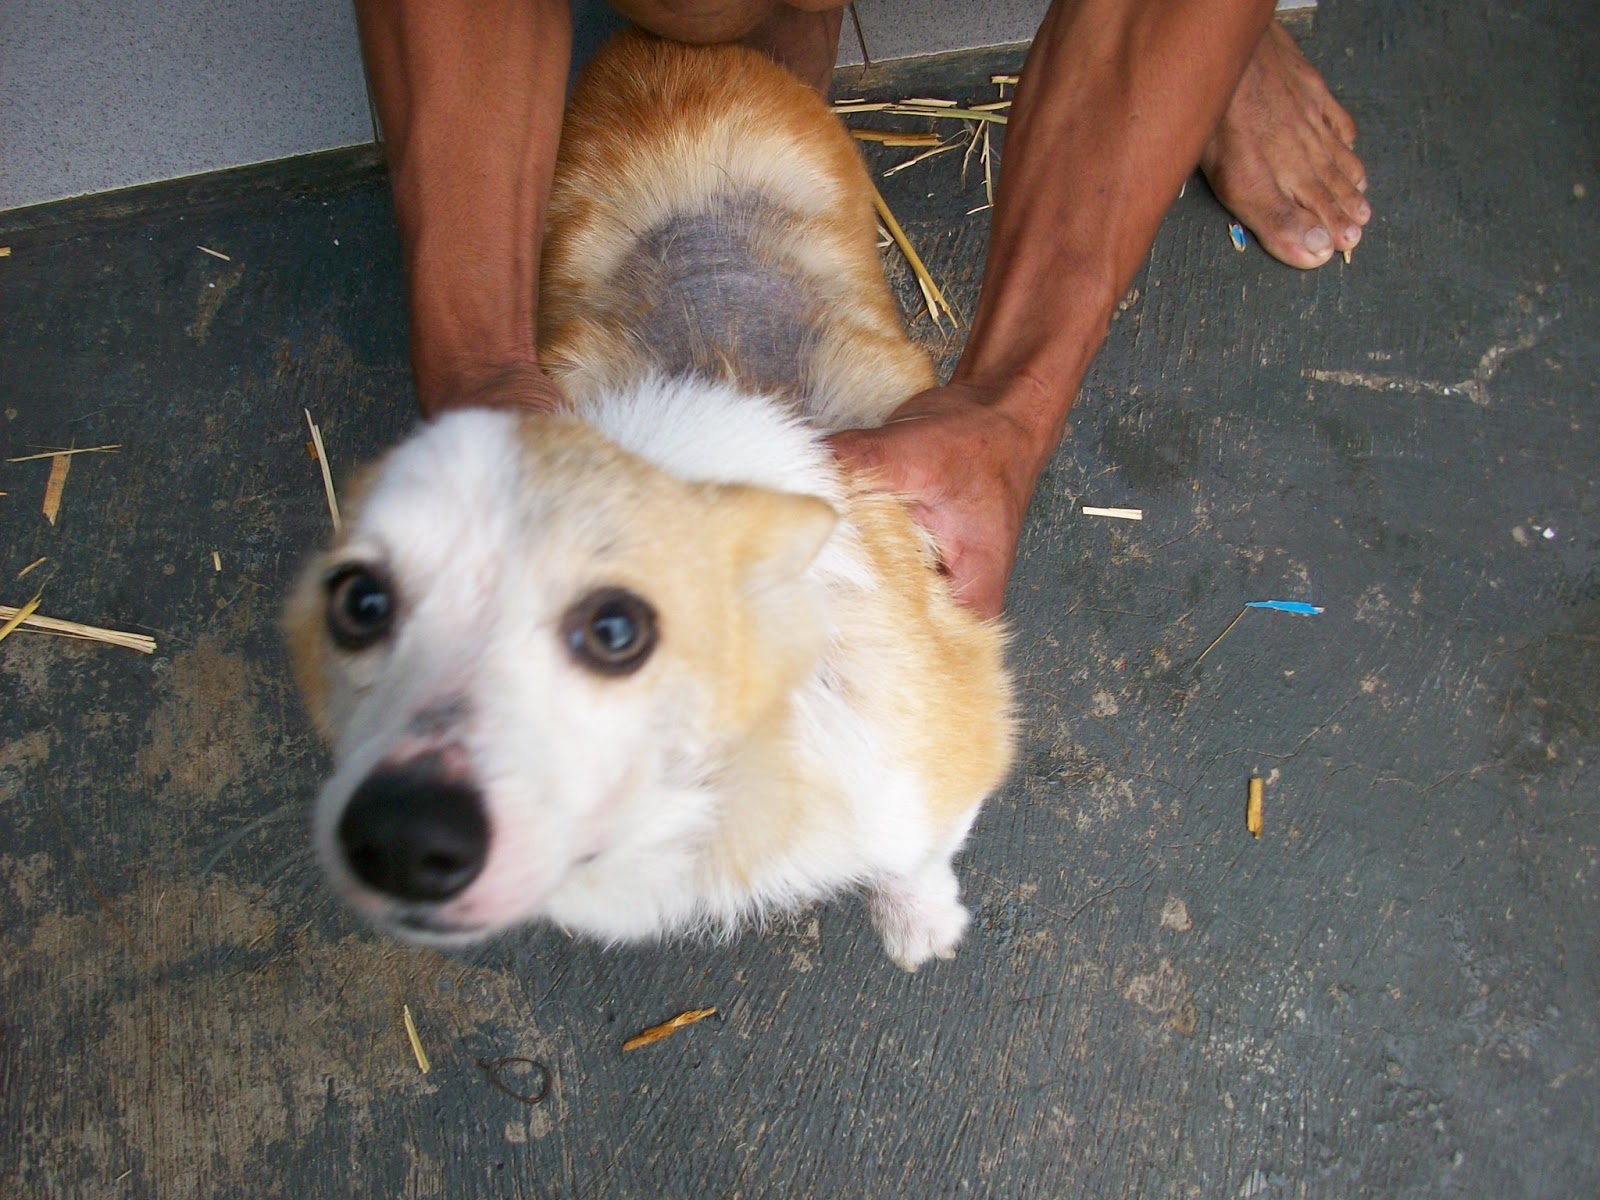 Gambar 2 dan 3 anjing yang sedang dirawat inap di klinik hewan happiness karena menderita scabies akut terlihat bulu rontok di punggung kepala dan kaki